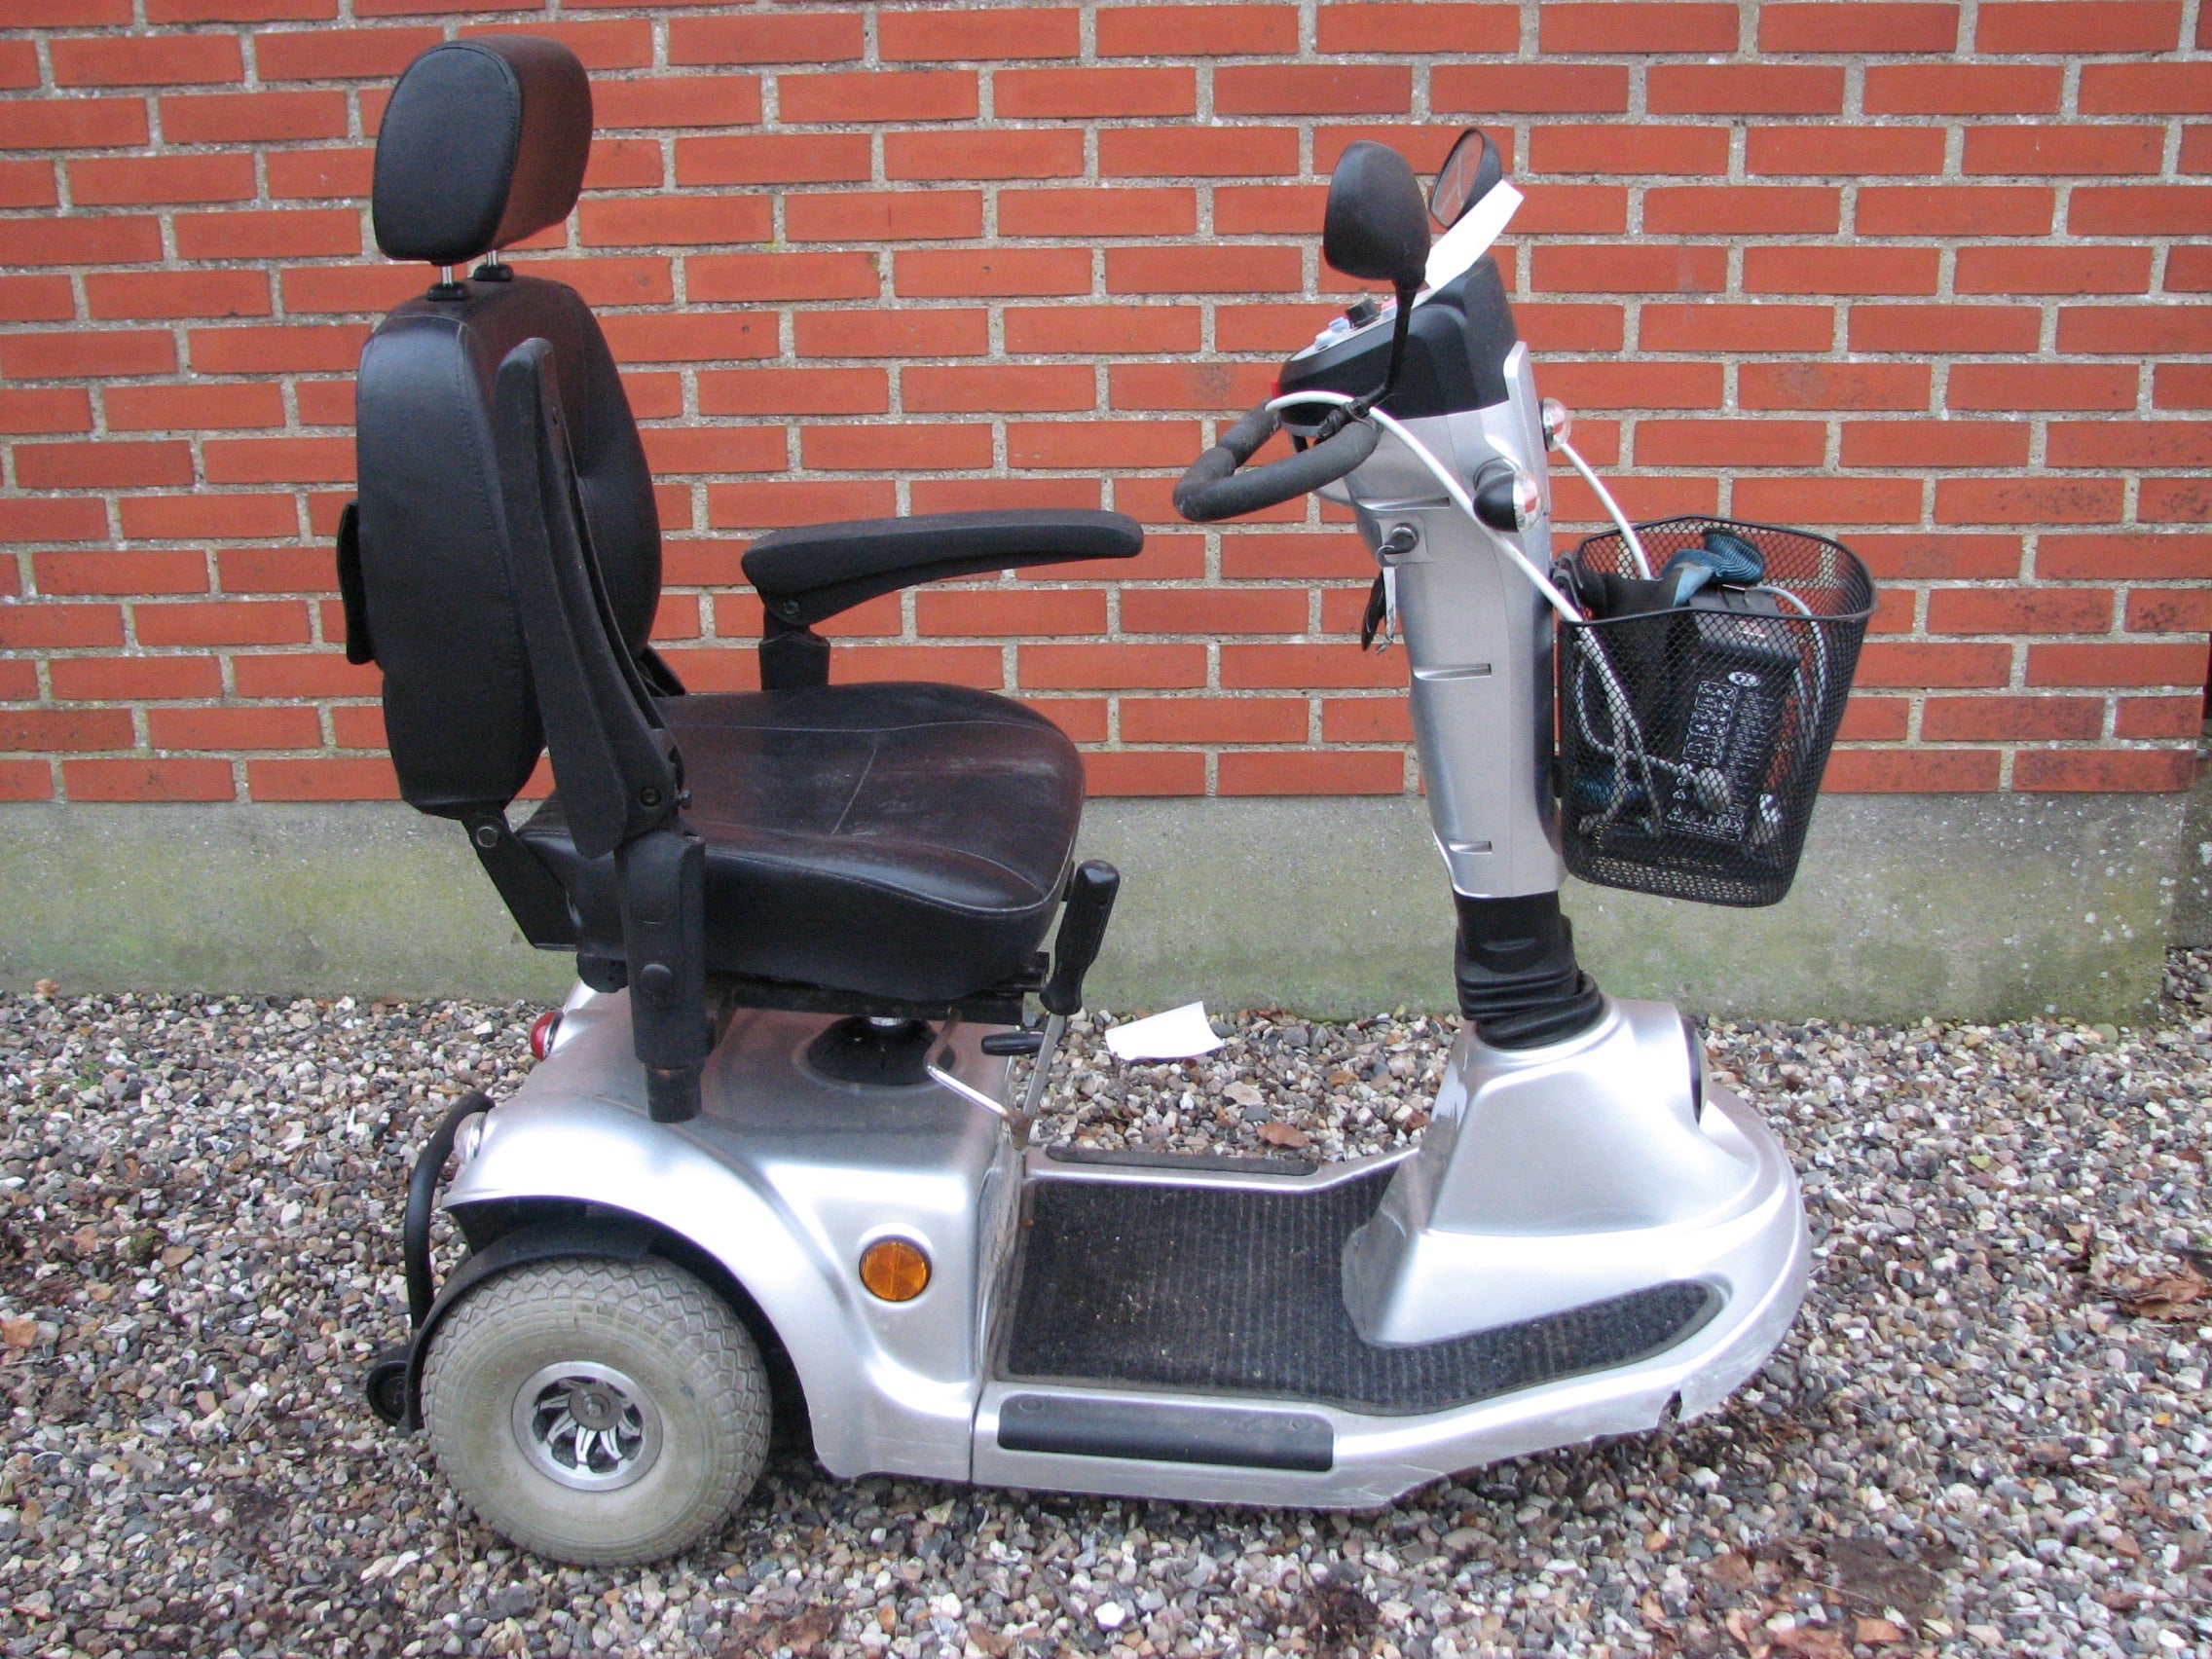 Rejsende ekstra millimeter Easy Go, El-scooter. Nordjylland. Tlf. 61660575. – Fønix Komfort